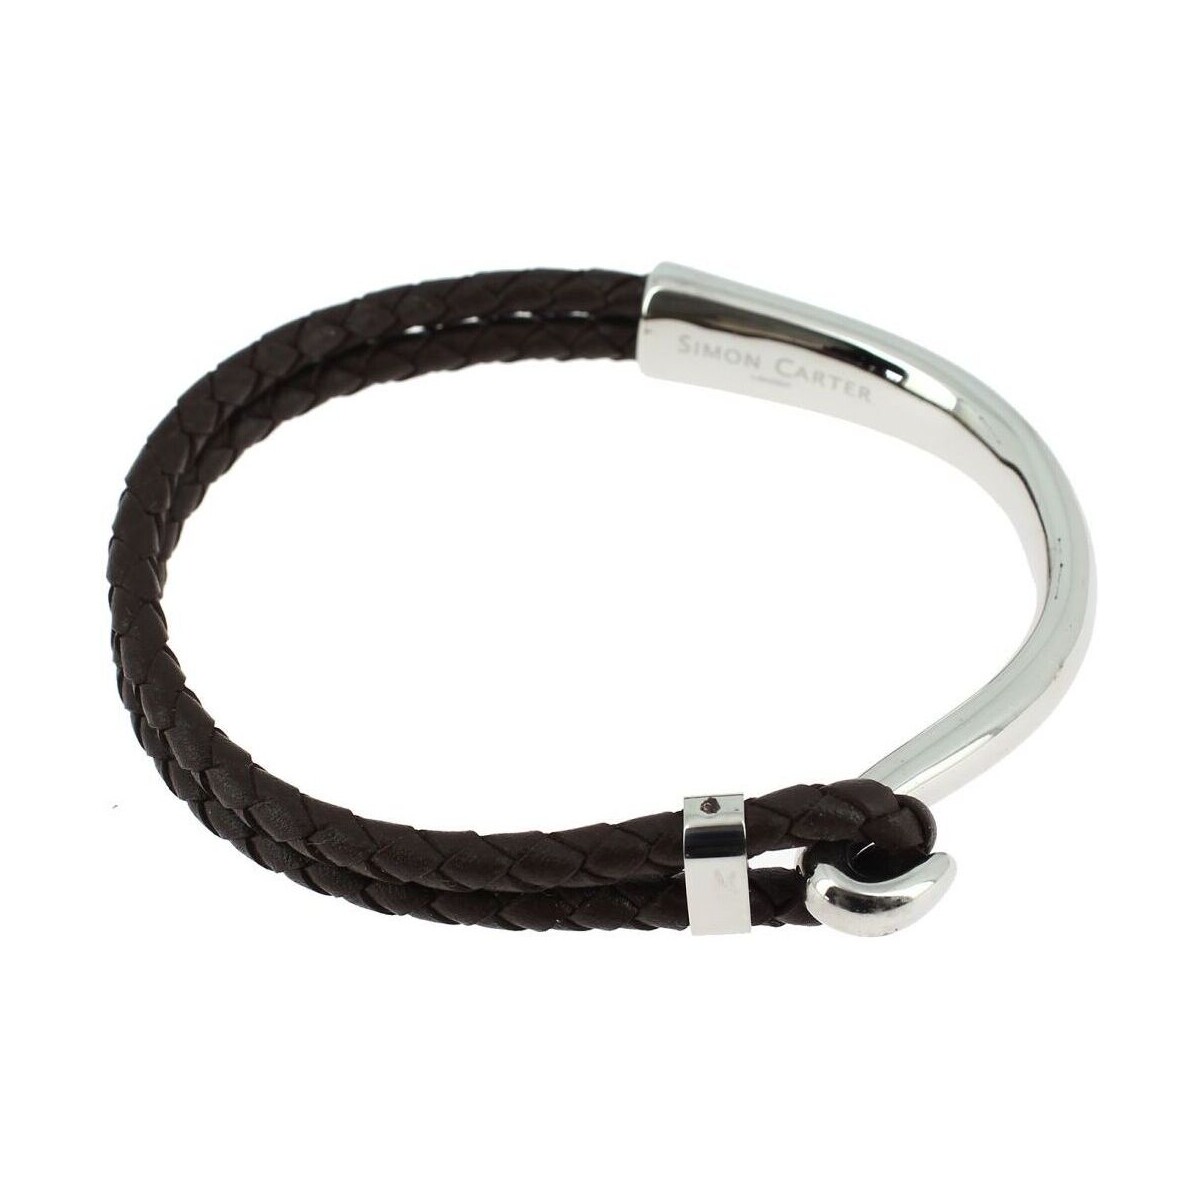 Lustres / suspensions et plafonniers Bracelets Simon Carter Bracelet CROCHET Marron